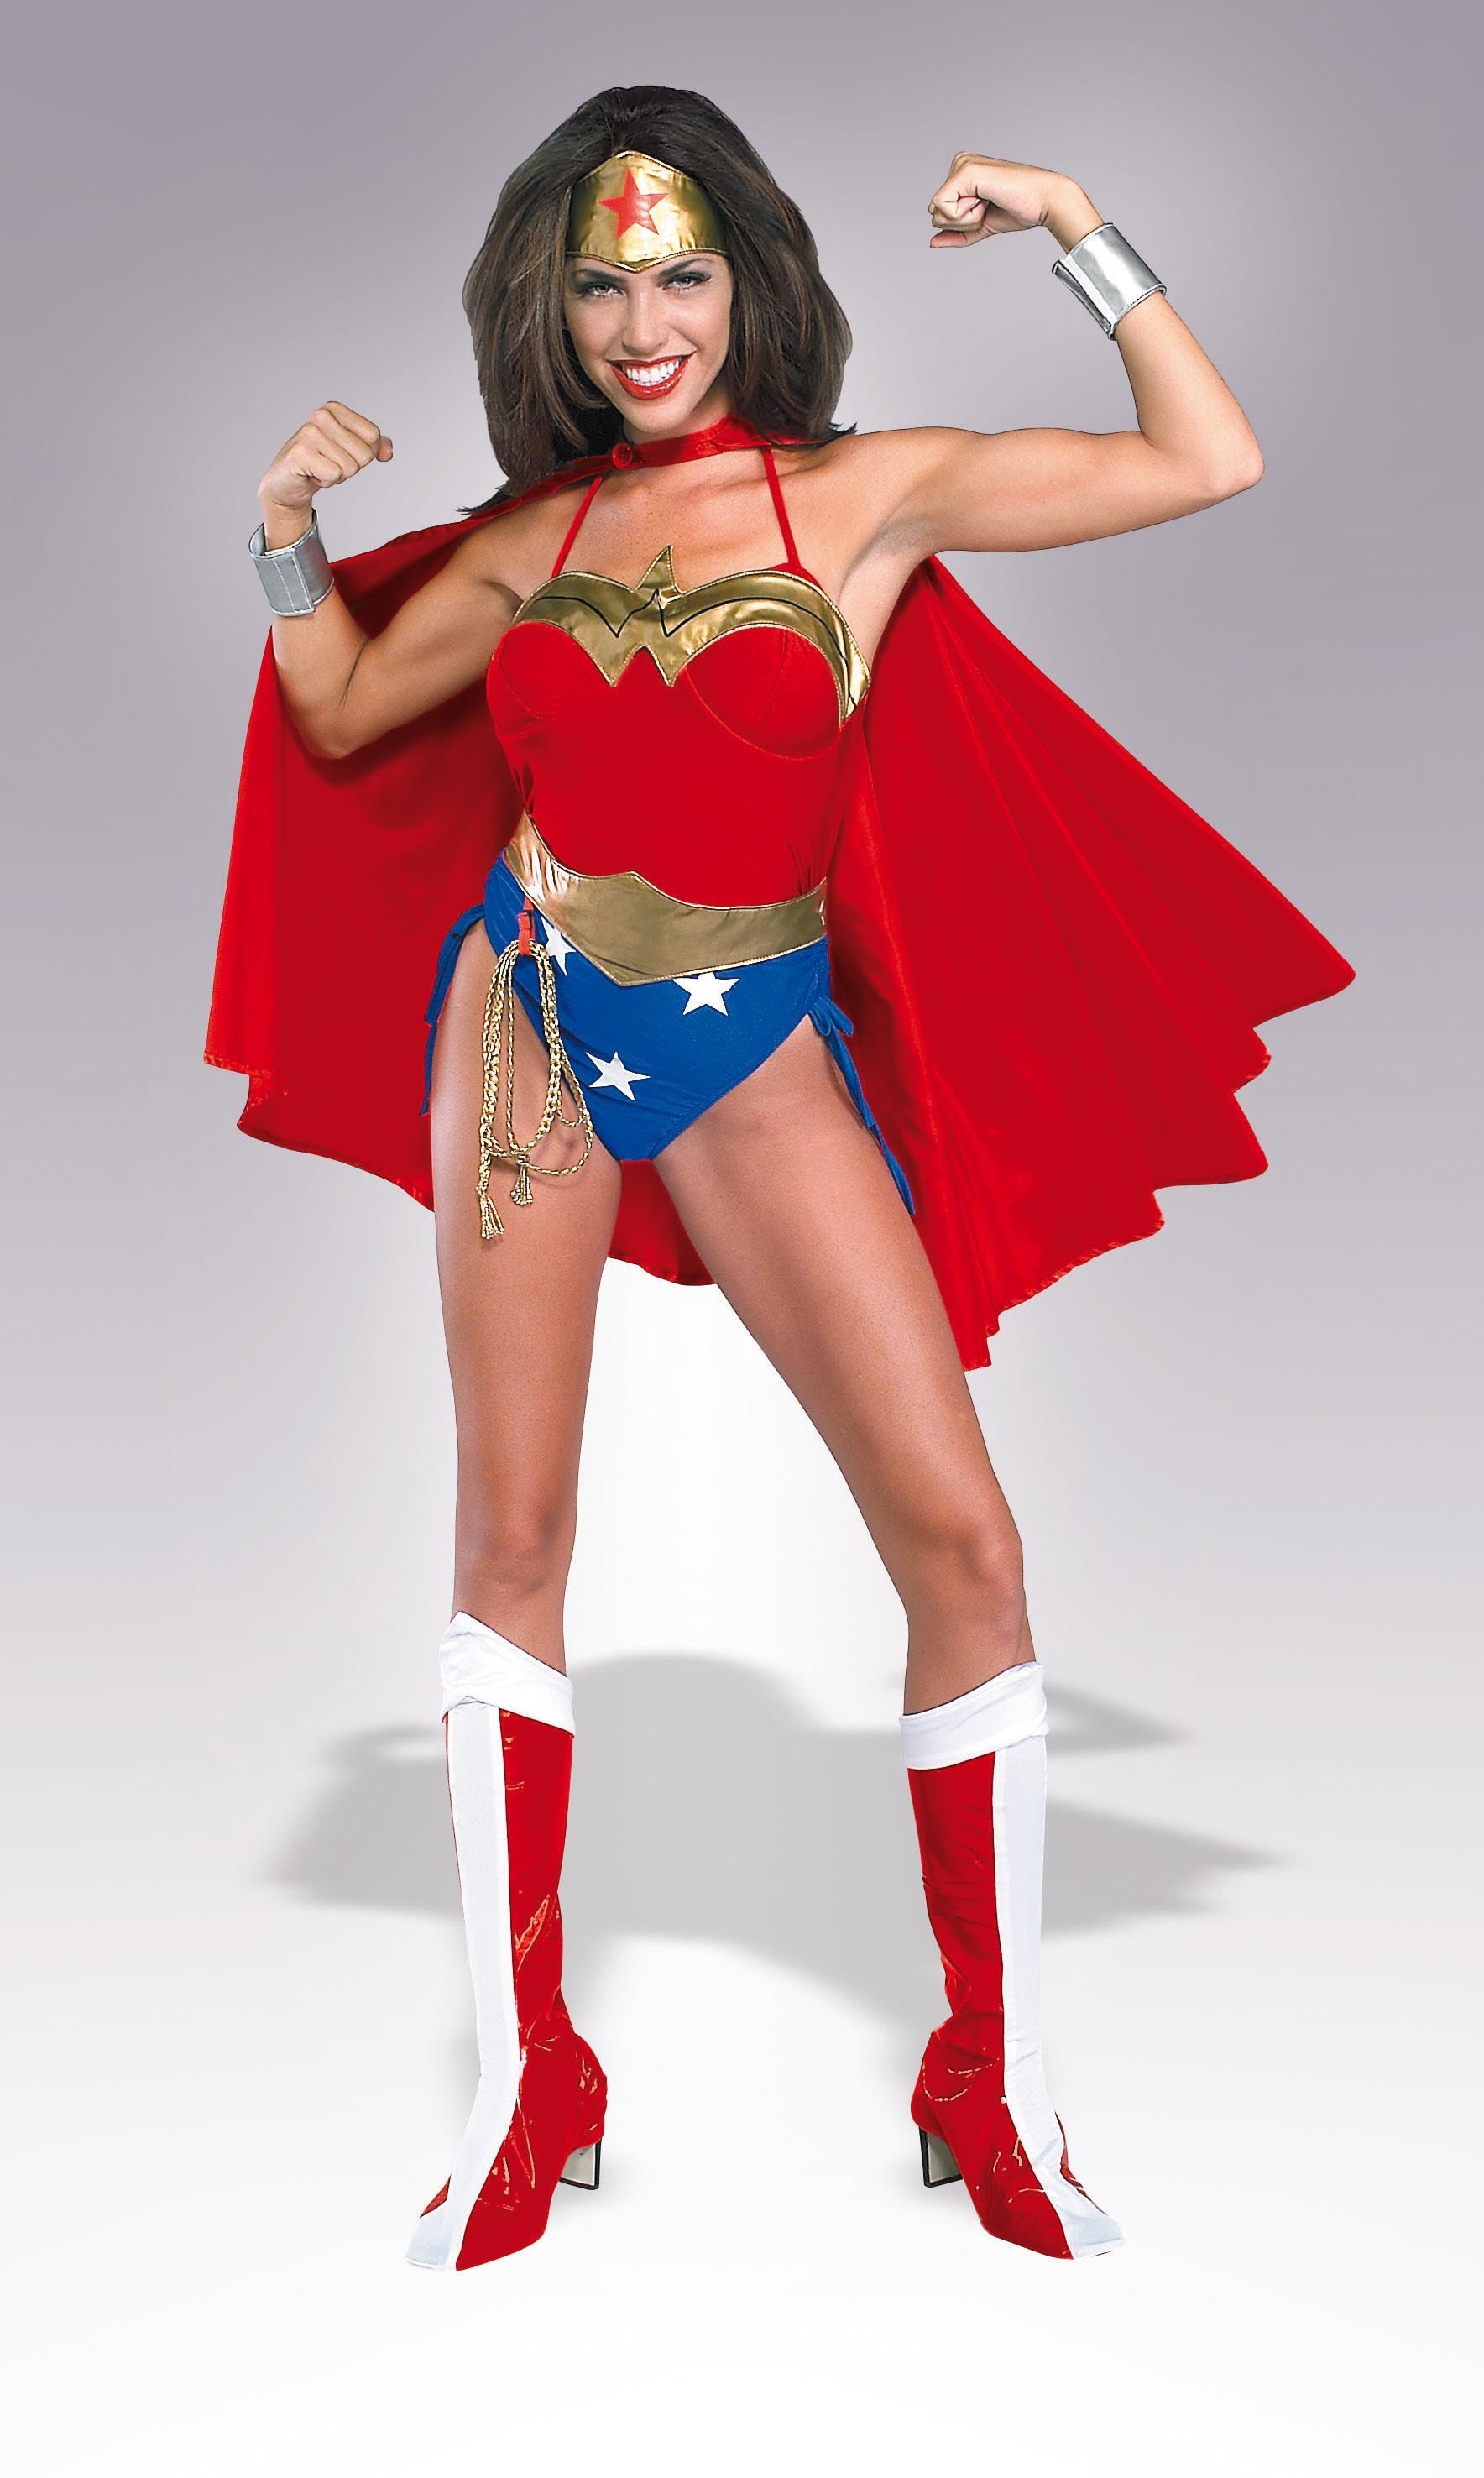 Déguisement Wonder Woman héroïne Marvel femme